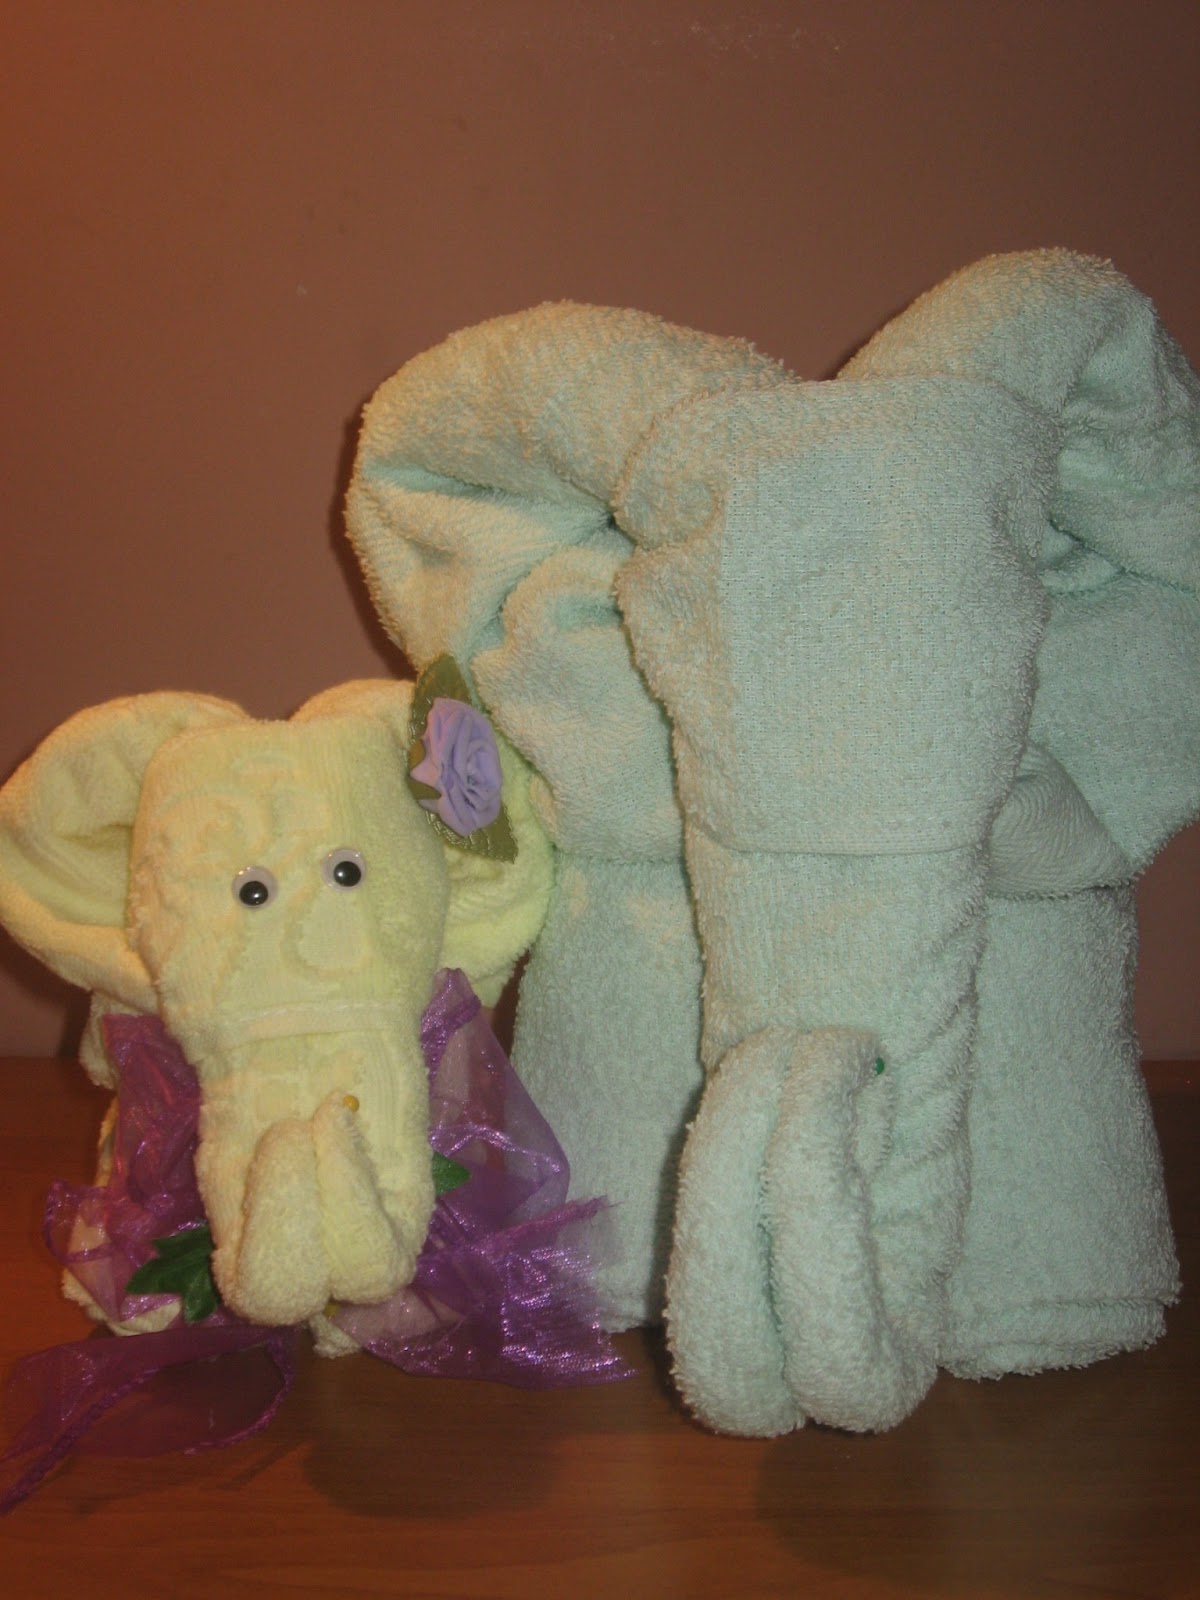 Jak Zrobić Słonia Z Ręczników Drobiazgi co cieszą: Kursik na słonika z ręczników